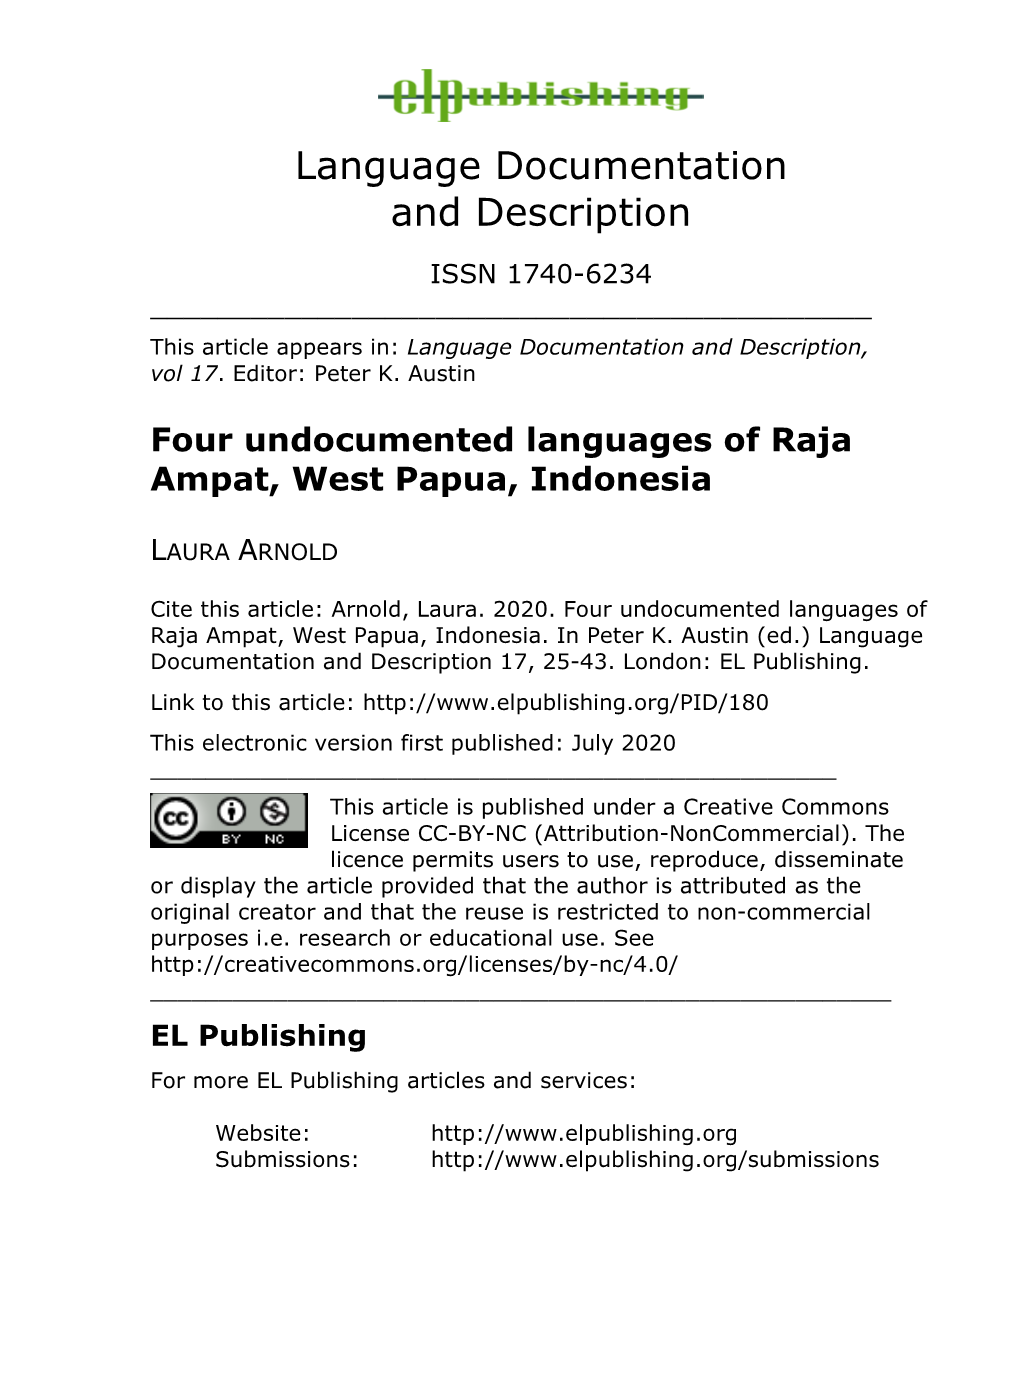 Four Undocumented Languages of Raja Ampat, West Papua, Indonesia